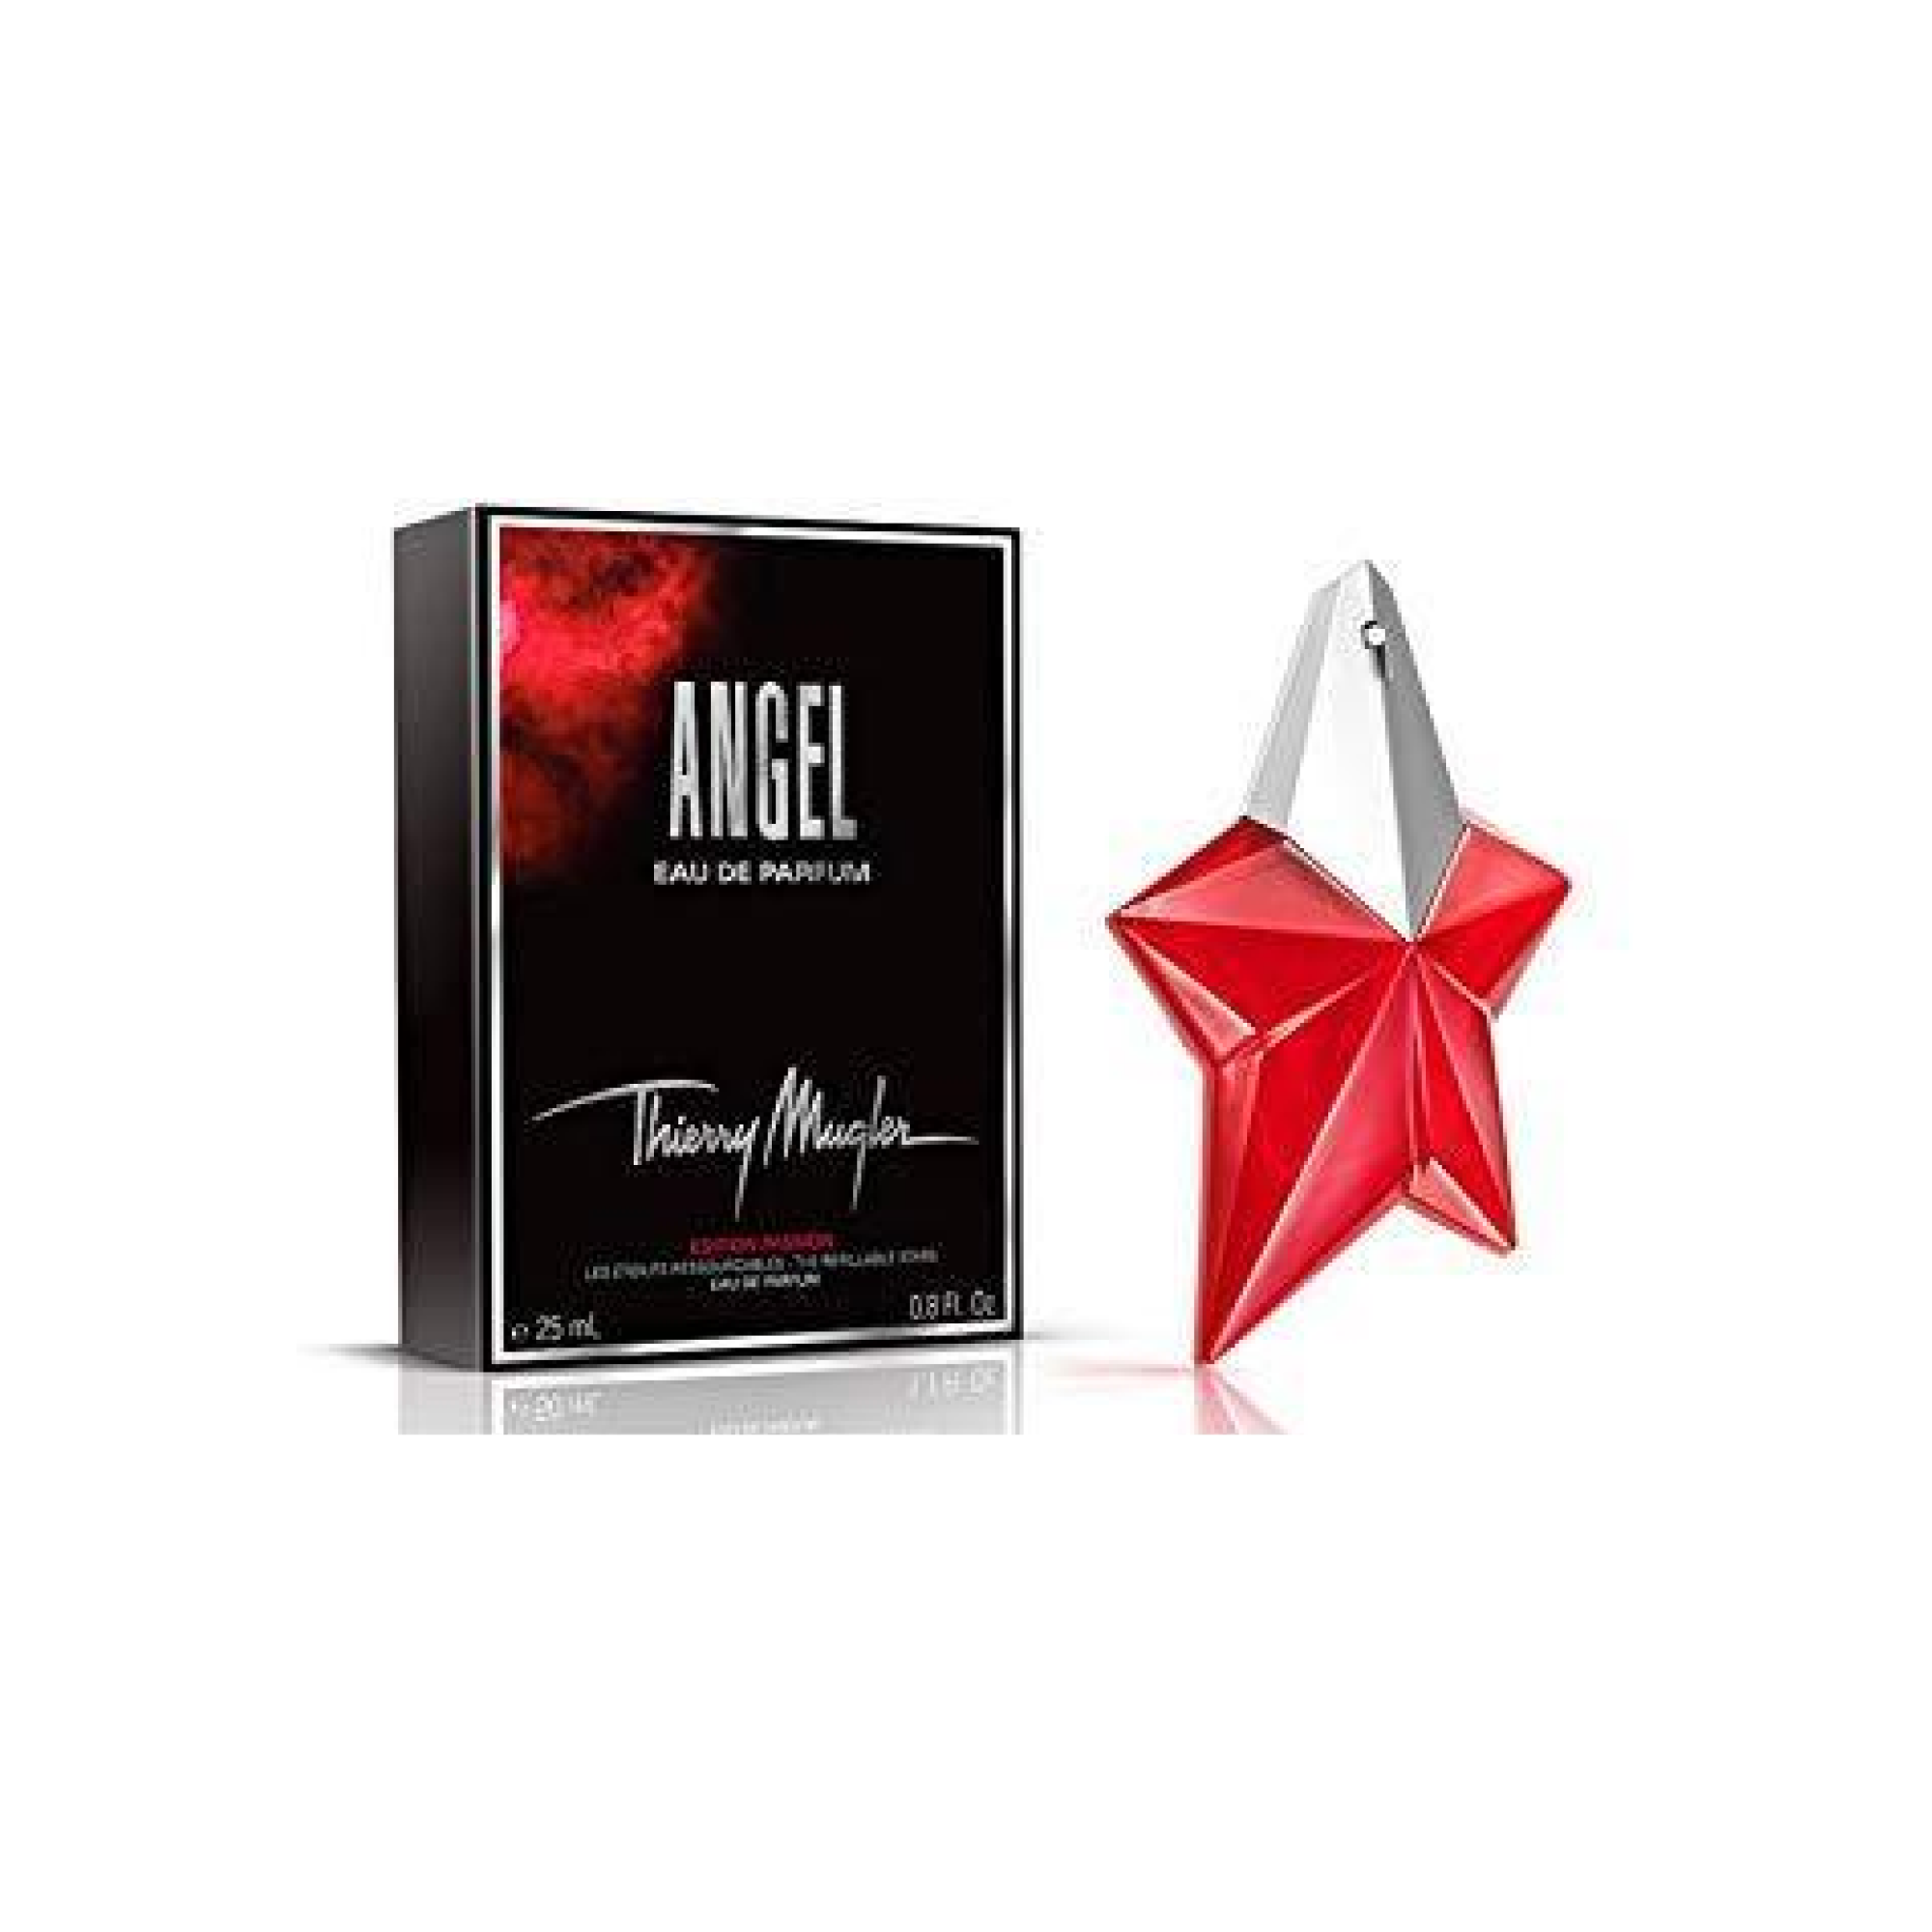 Angel "Edition Passion" Refillable eau de parfum spray